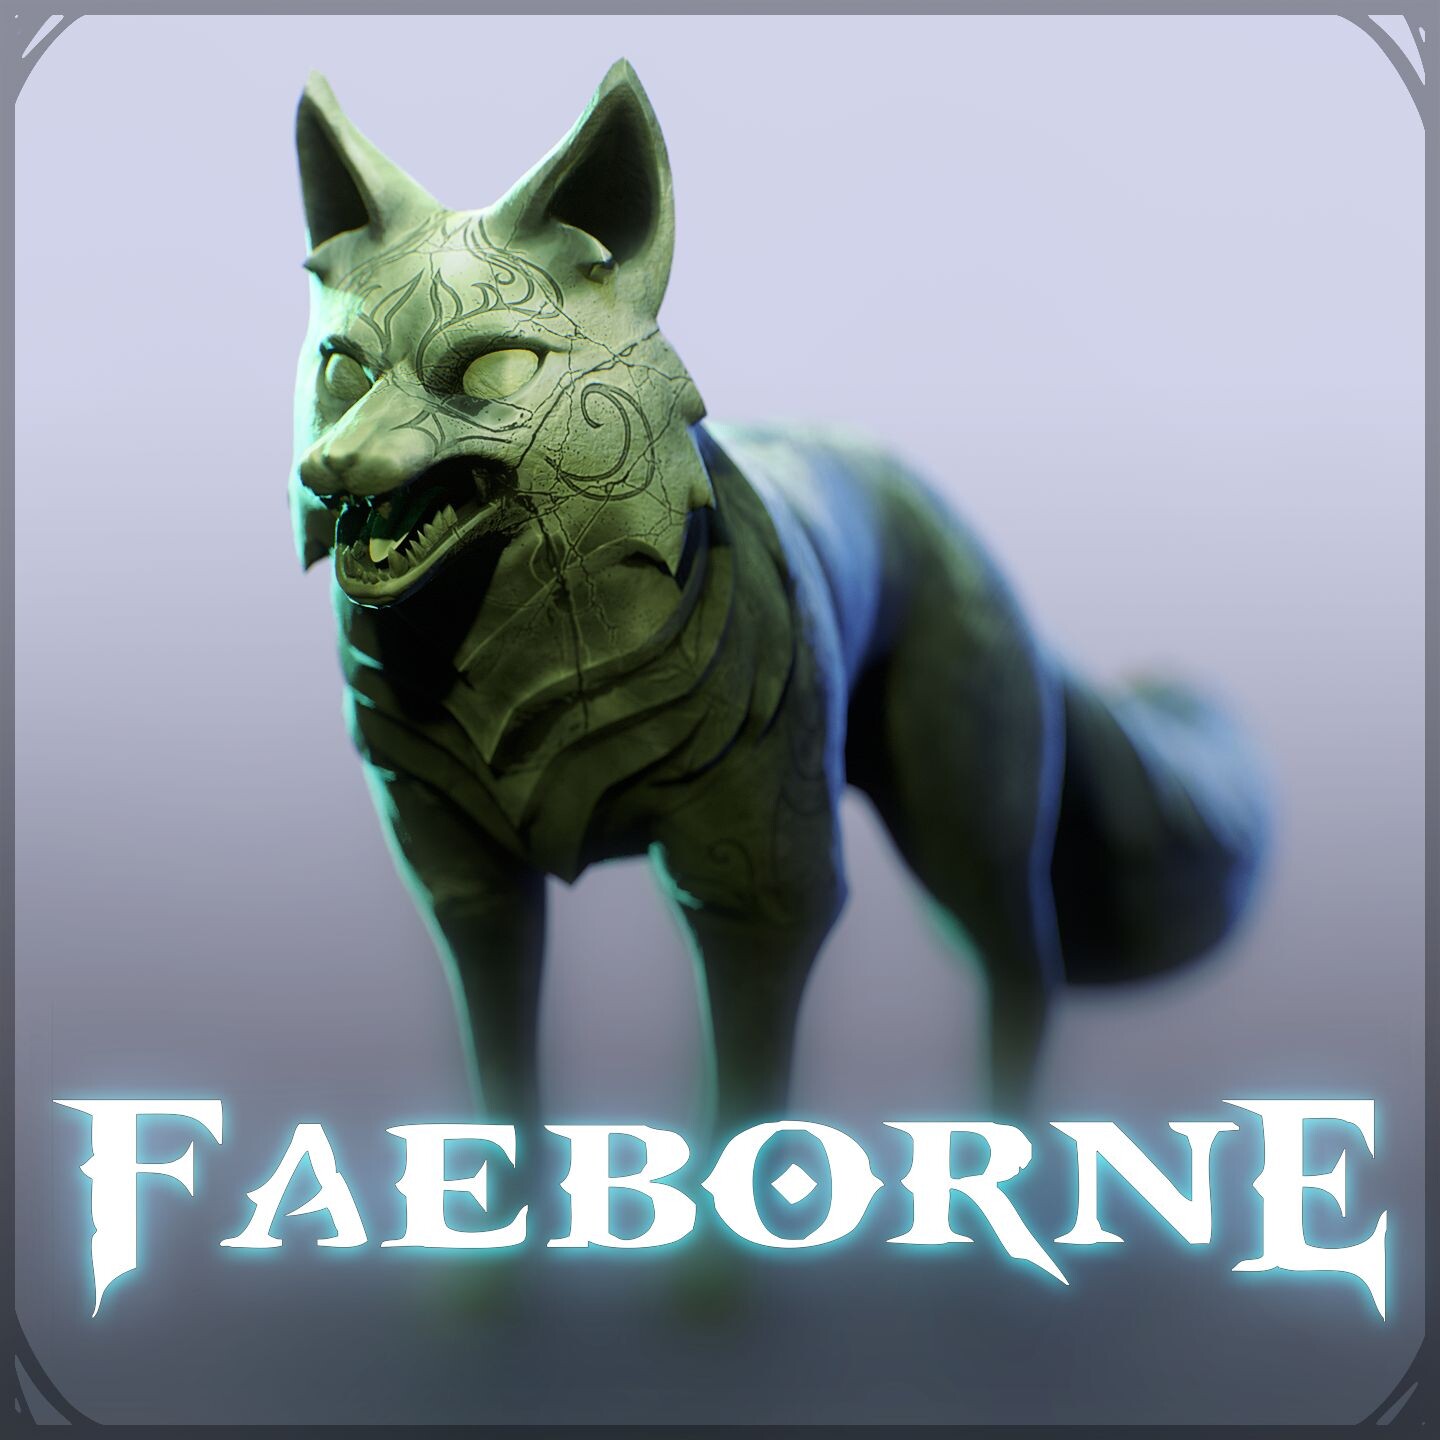 Faeborne | Fox Statue